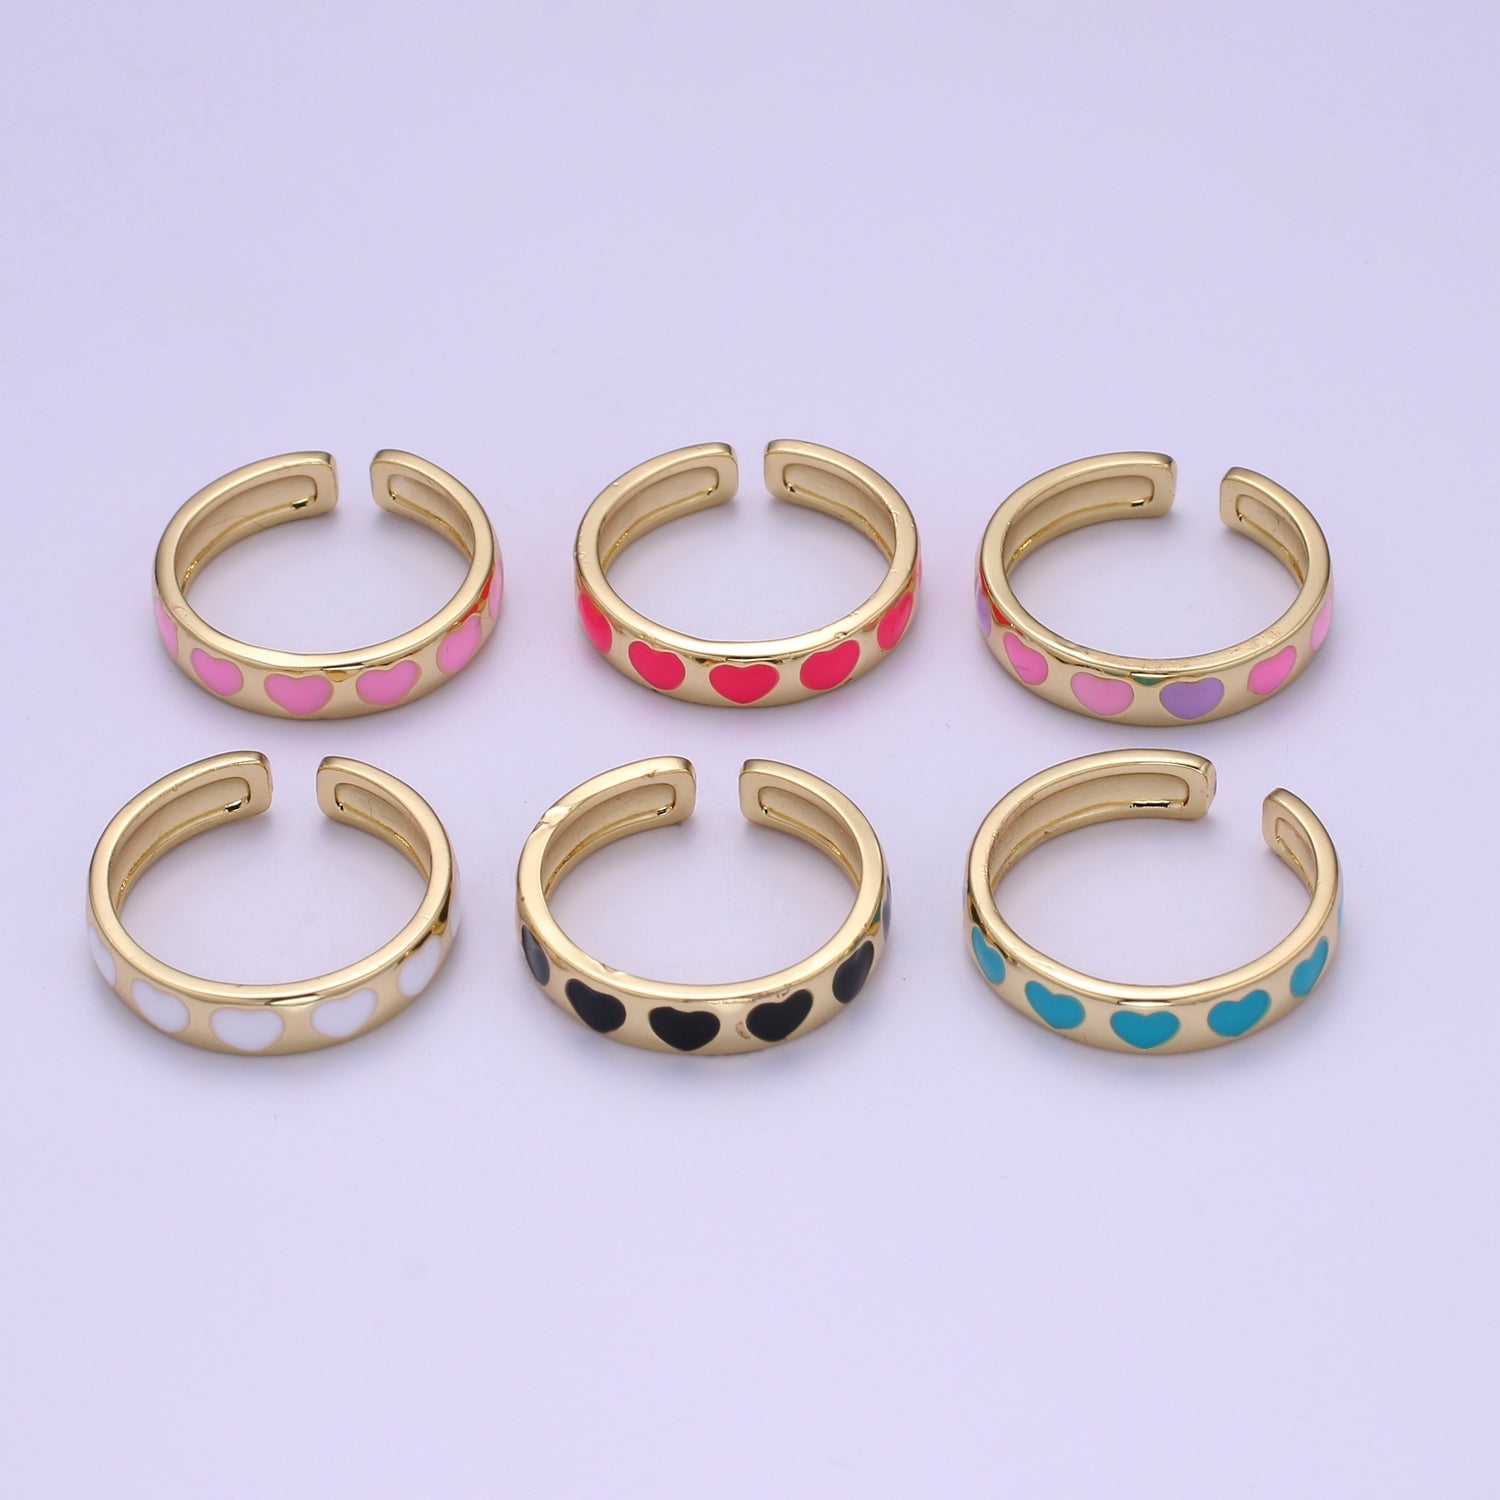 Dainty Colorful Enamel Heart Adjustable Ring, Gold Enamel Open Ring, Black Pink Teal Purple White Enamel Heart Jewelry Trend - DLUXCA